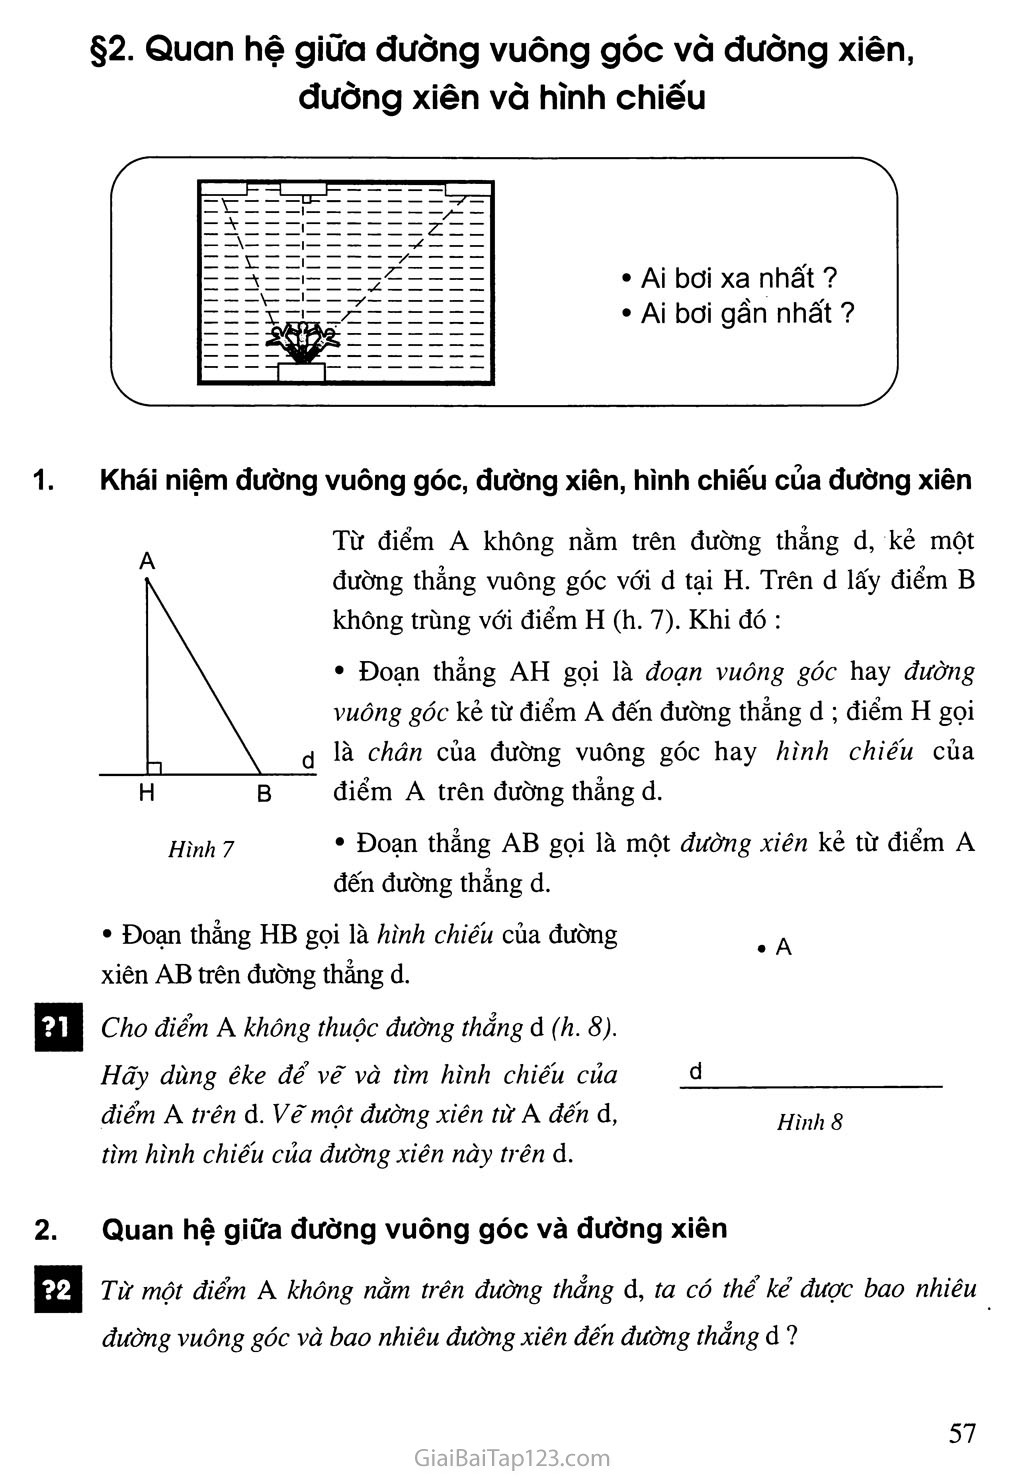 Bài 2. Quan hệ giữa đường vuông góc và đường xiên, đường xiên và hình chiếu trang 1